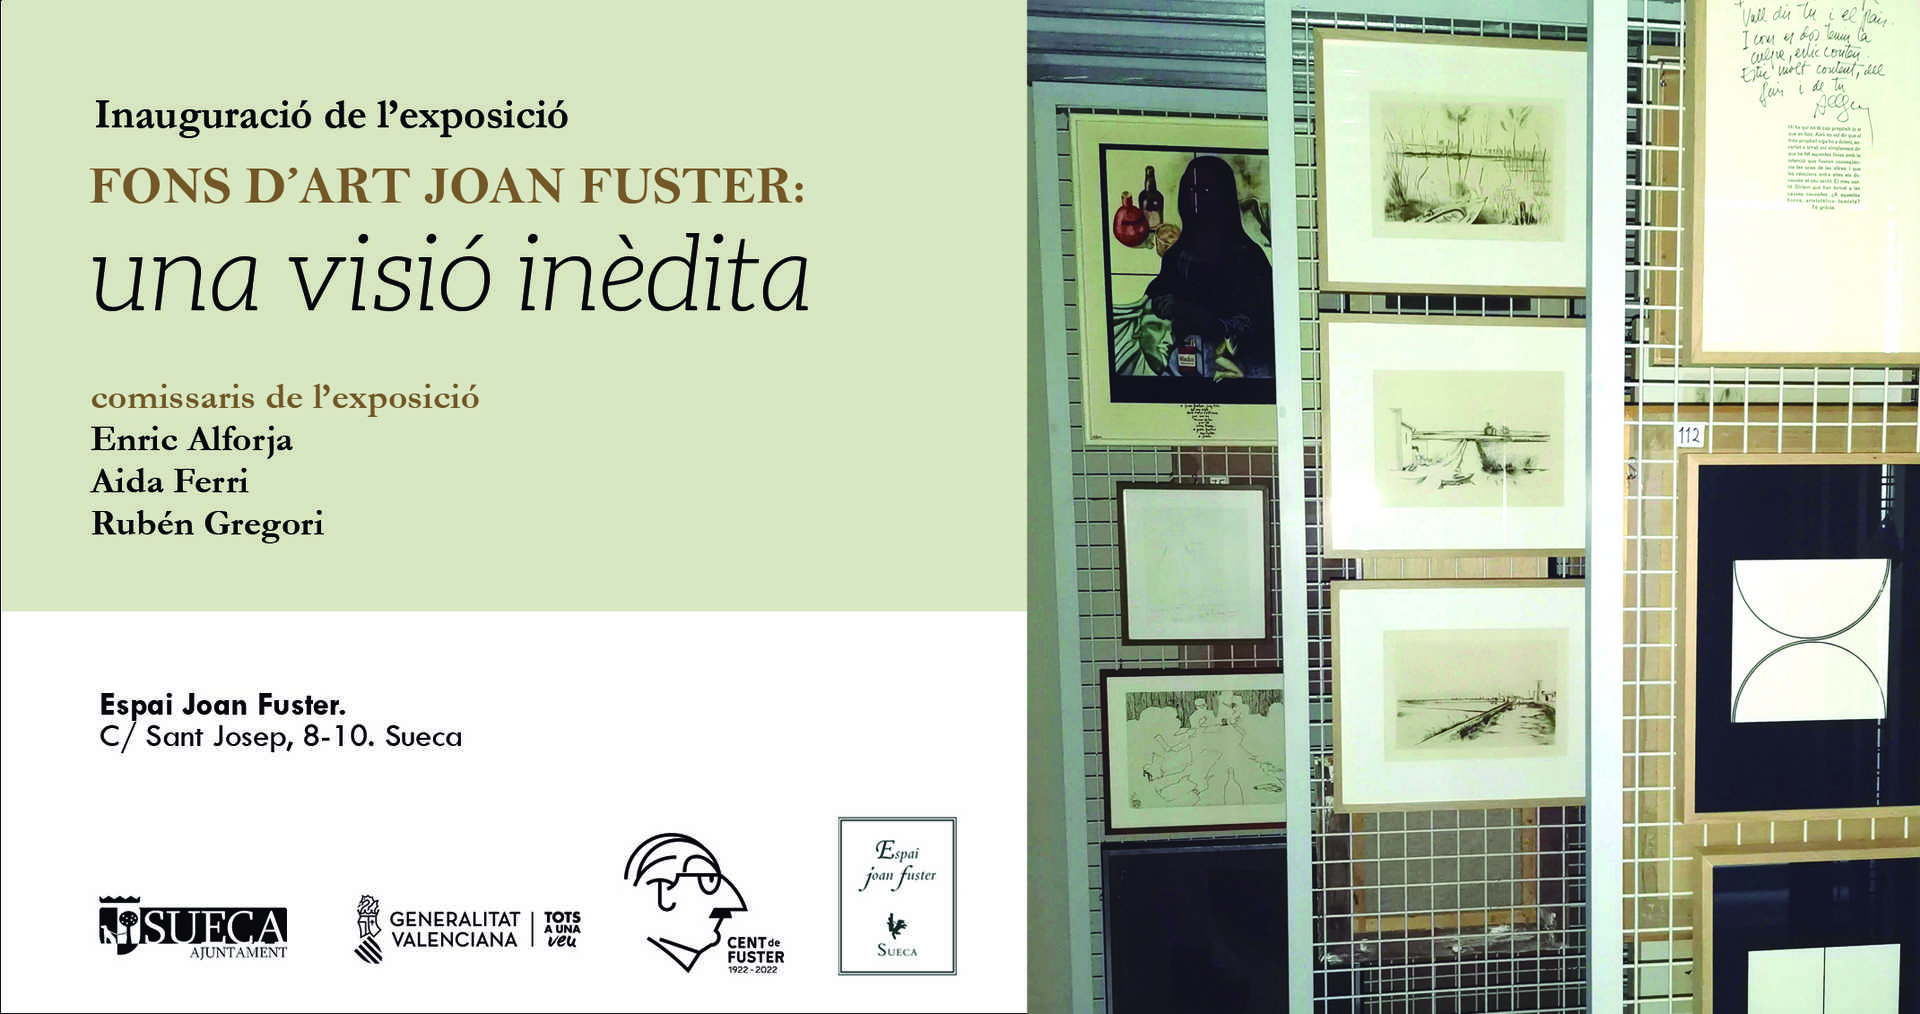 EXPOSICIÓ FONS D'ART JOAN FUSTER: UNA VISIÓ INÈDITA